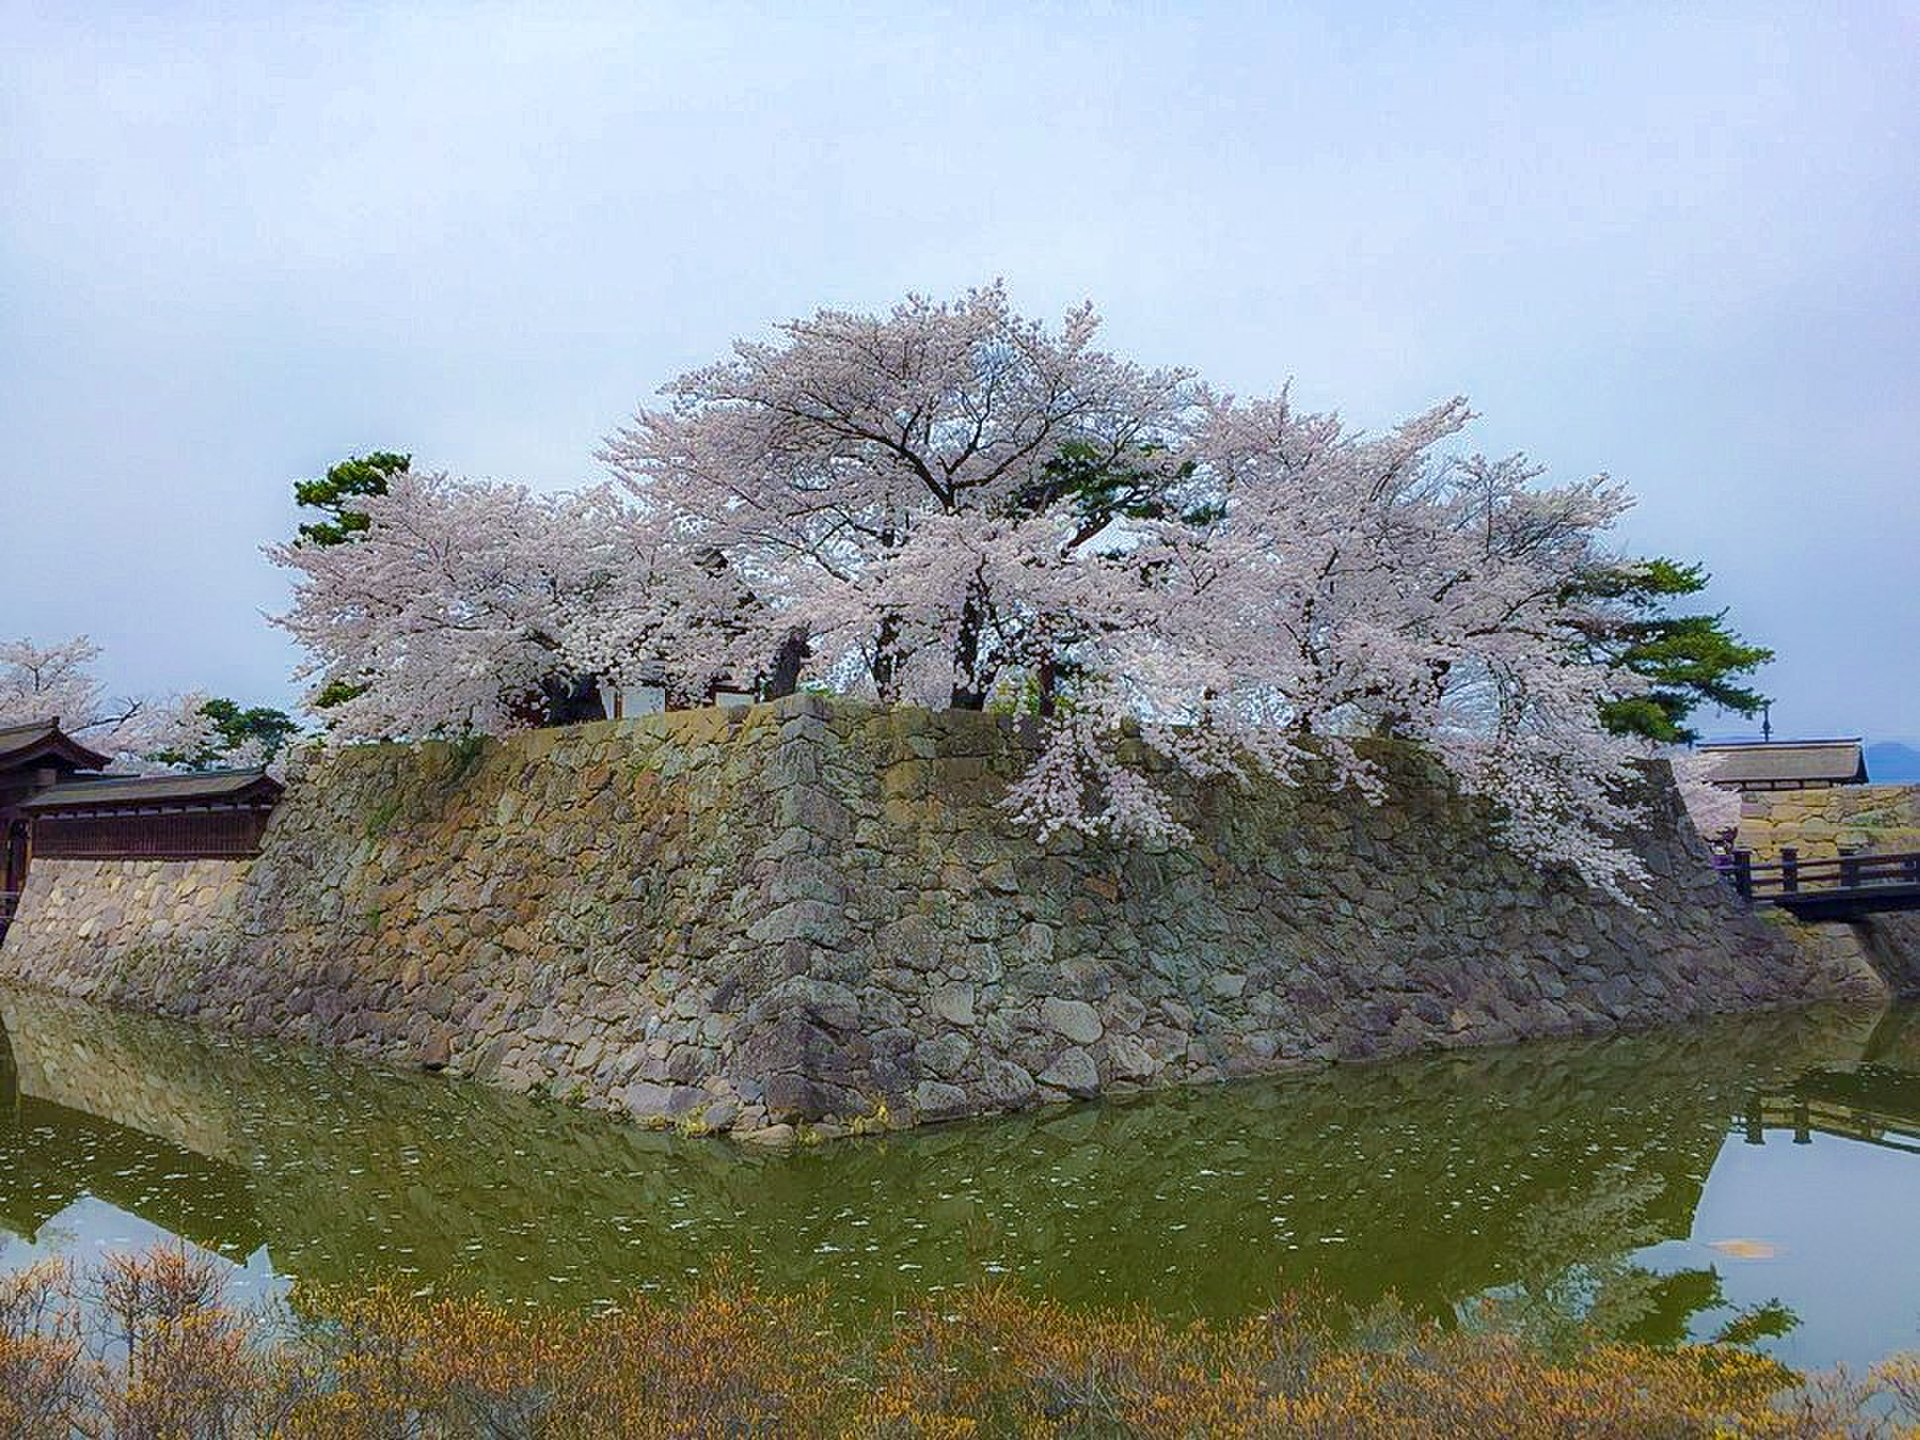 春の信州旅行 川中島と松代で咲き乱れる桜を楽しみ荒砥城から信濃の大地を見渡す旅